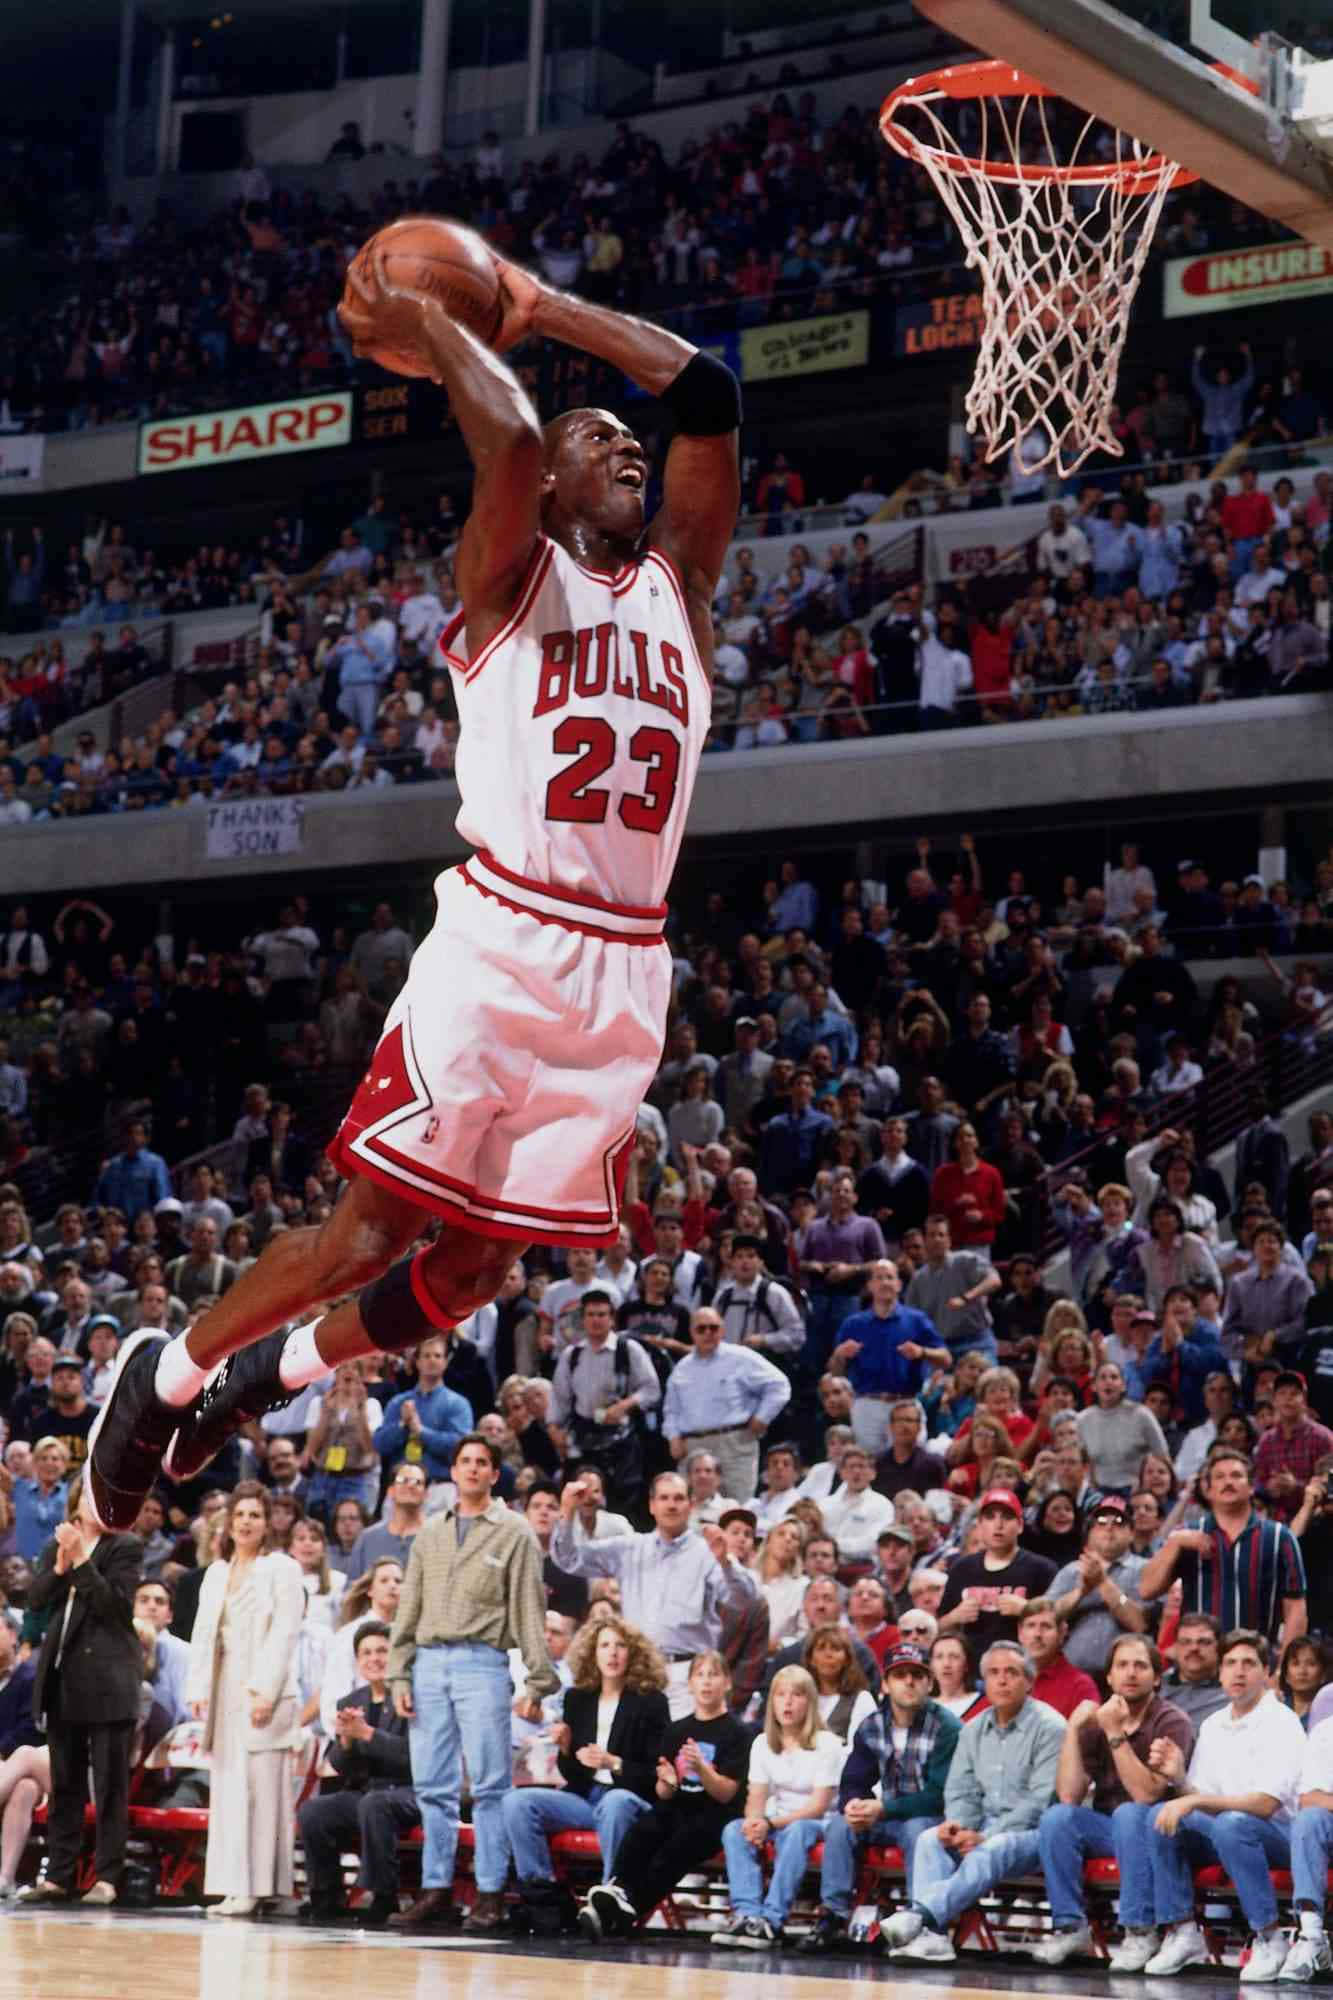 Scattopieno D'azione Di Michael Jordan In Volo Durante Una Partita Di Basket